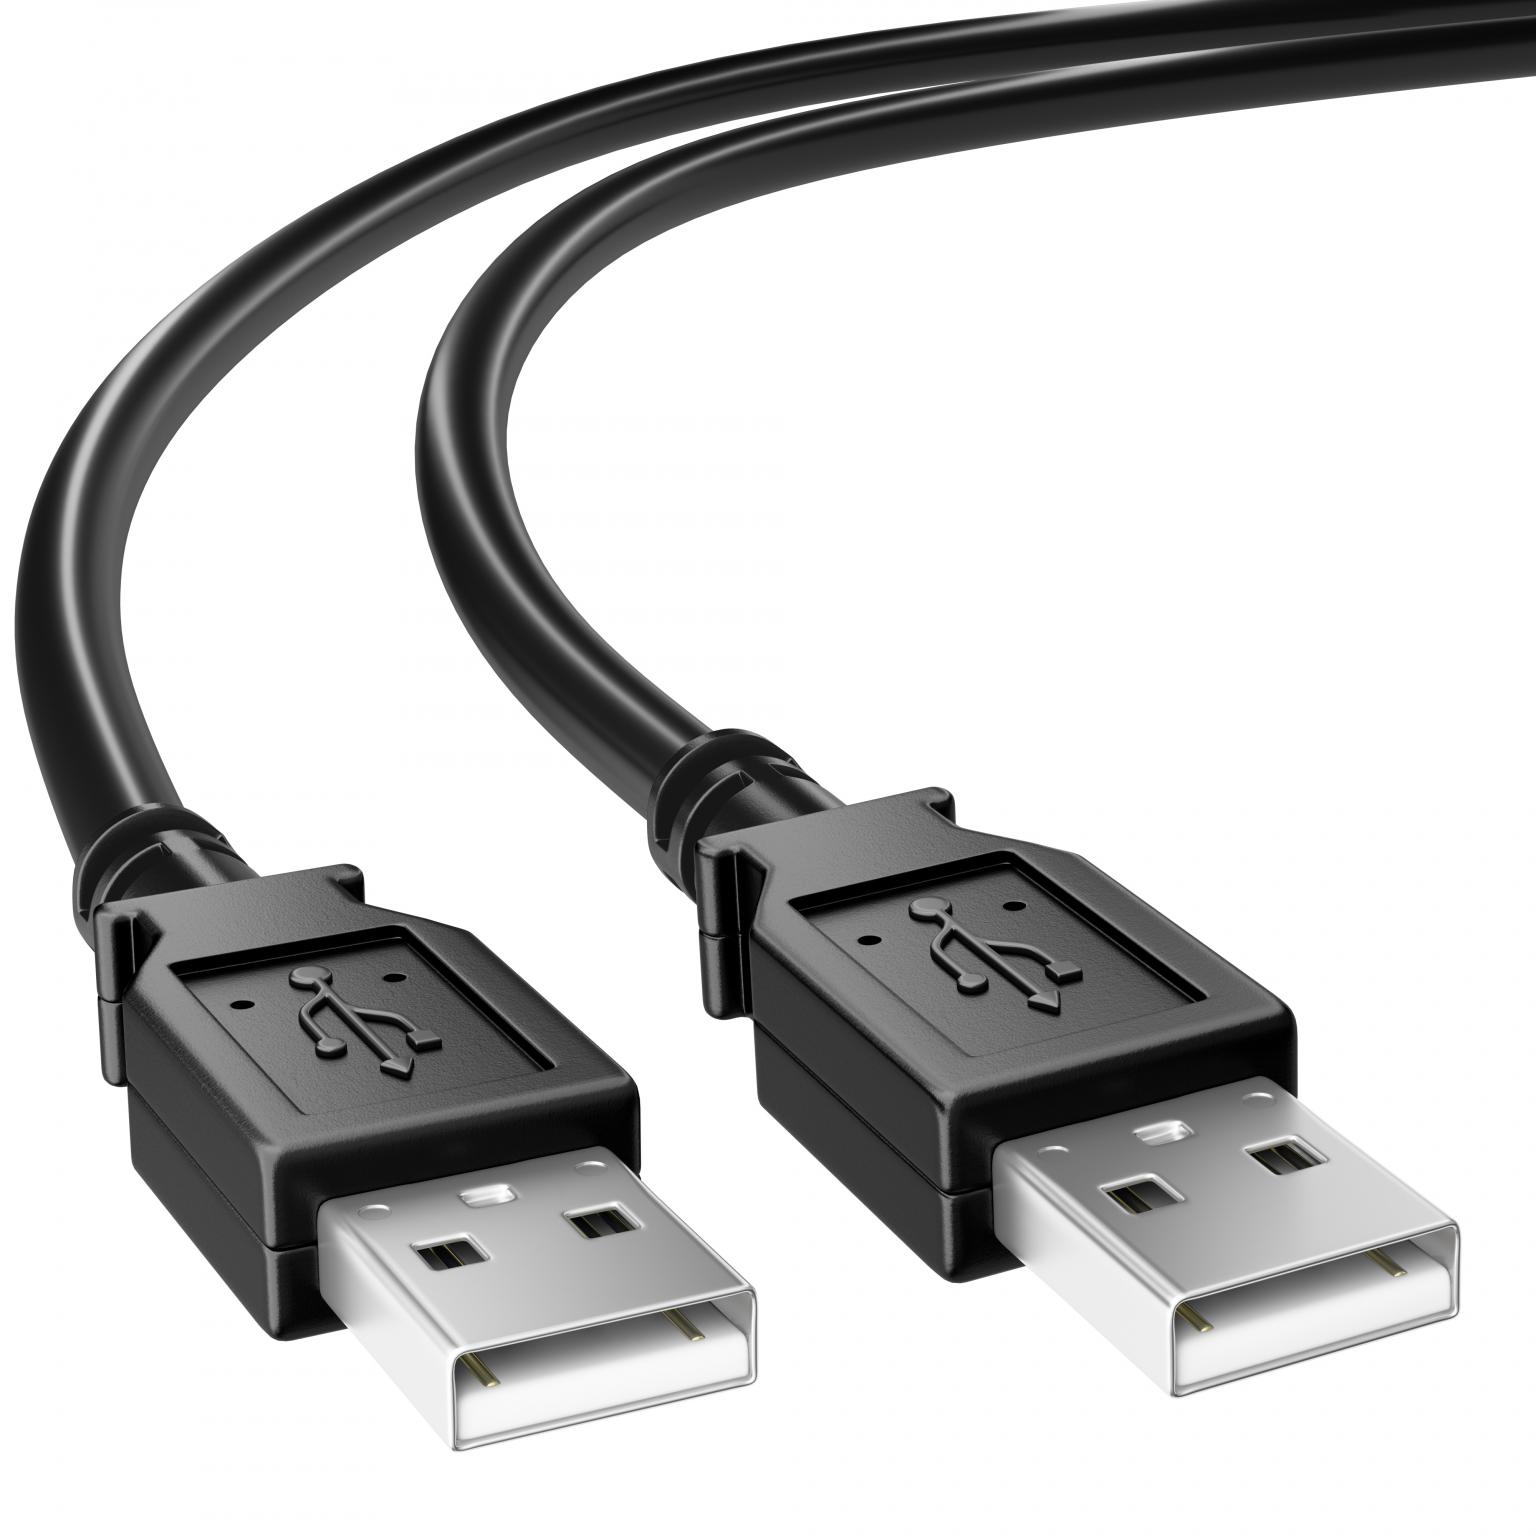 Lijkenhuis gevechten Omtrek USB 2.0 Kabel - USB A naar USB A Kabel - Zwart, Type: 2.0 - High Speed,  Aansluiting 1: USB A male, Aansluiting 2: USB A male 2 meter.